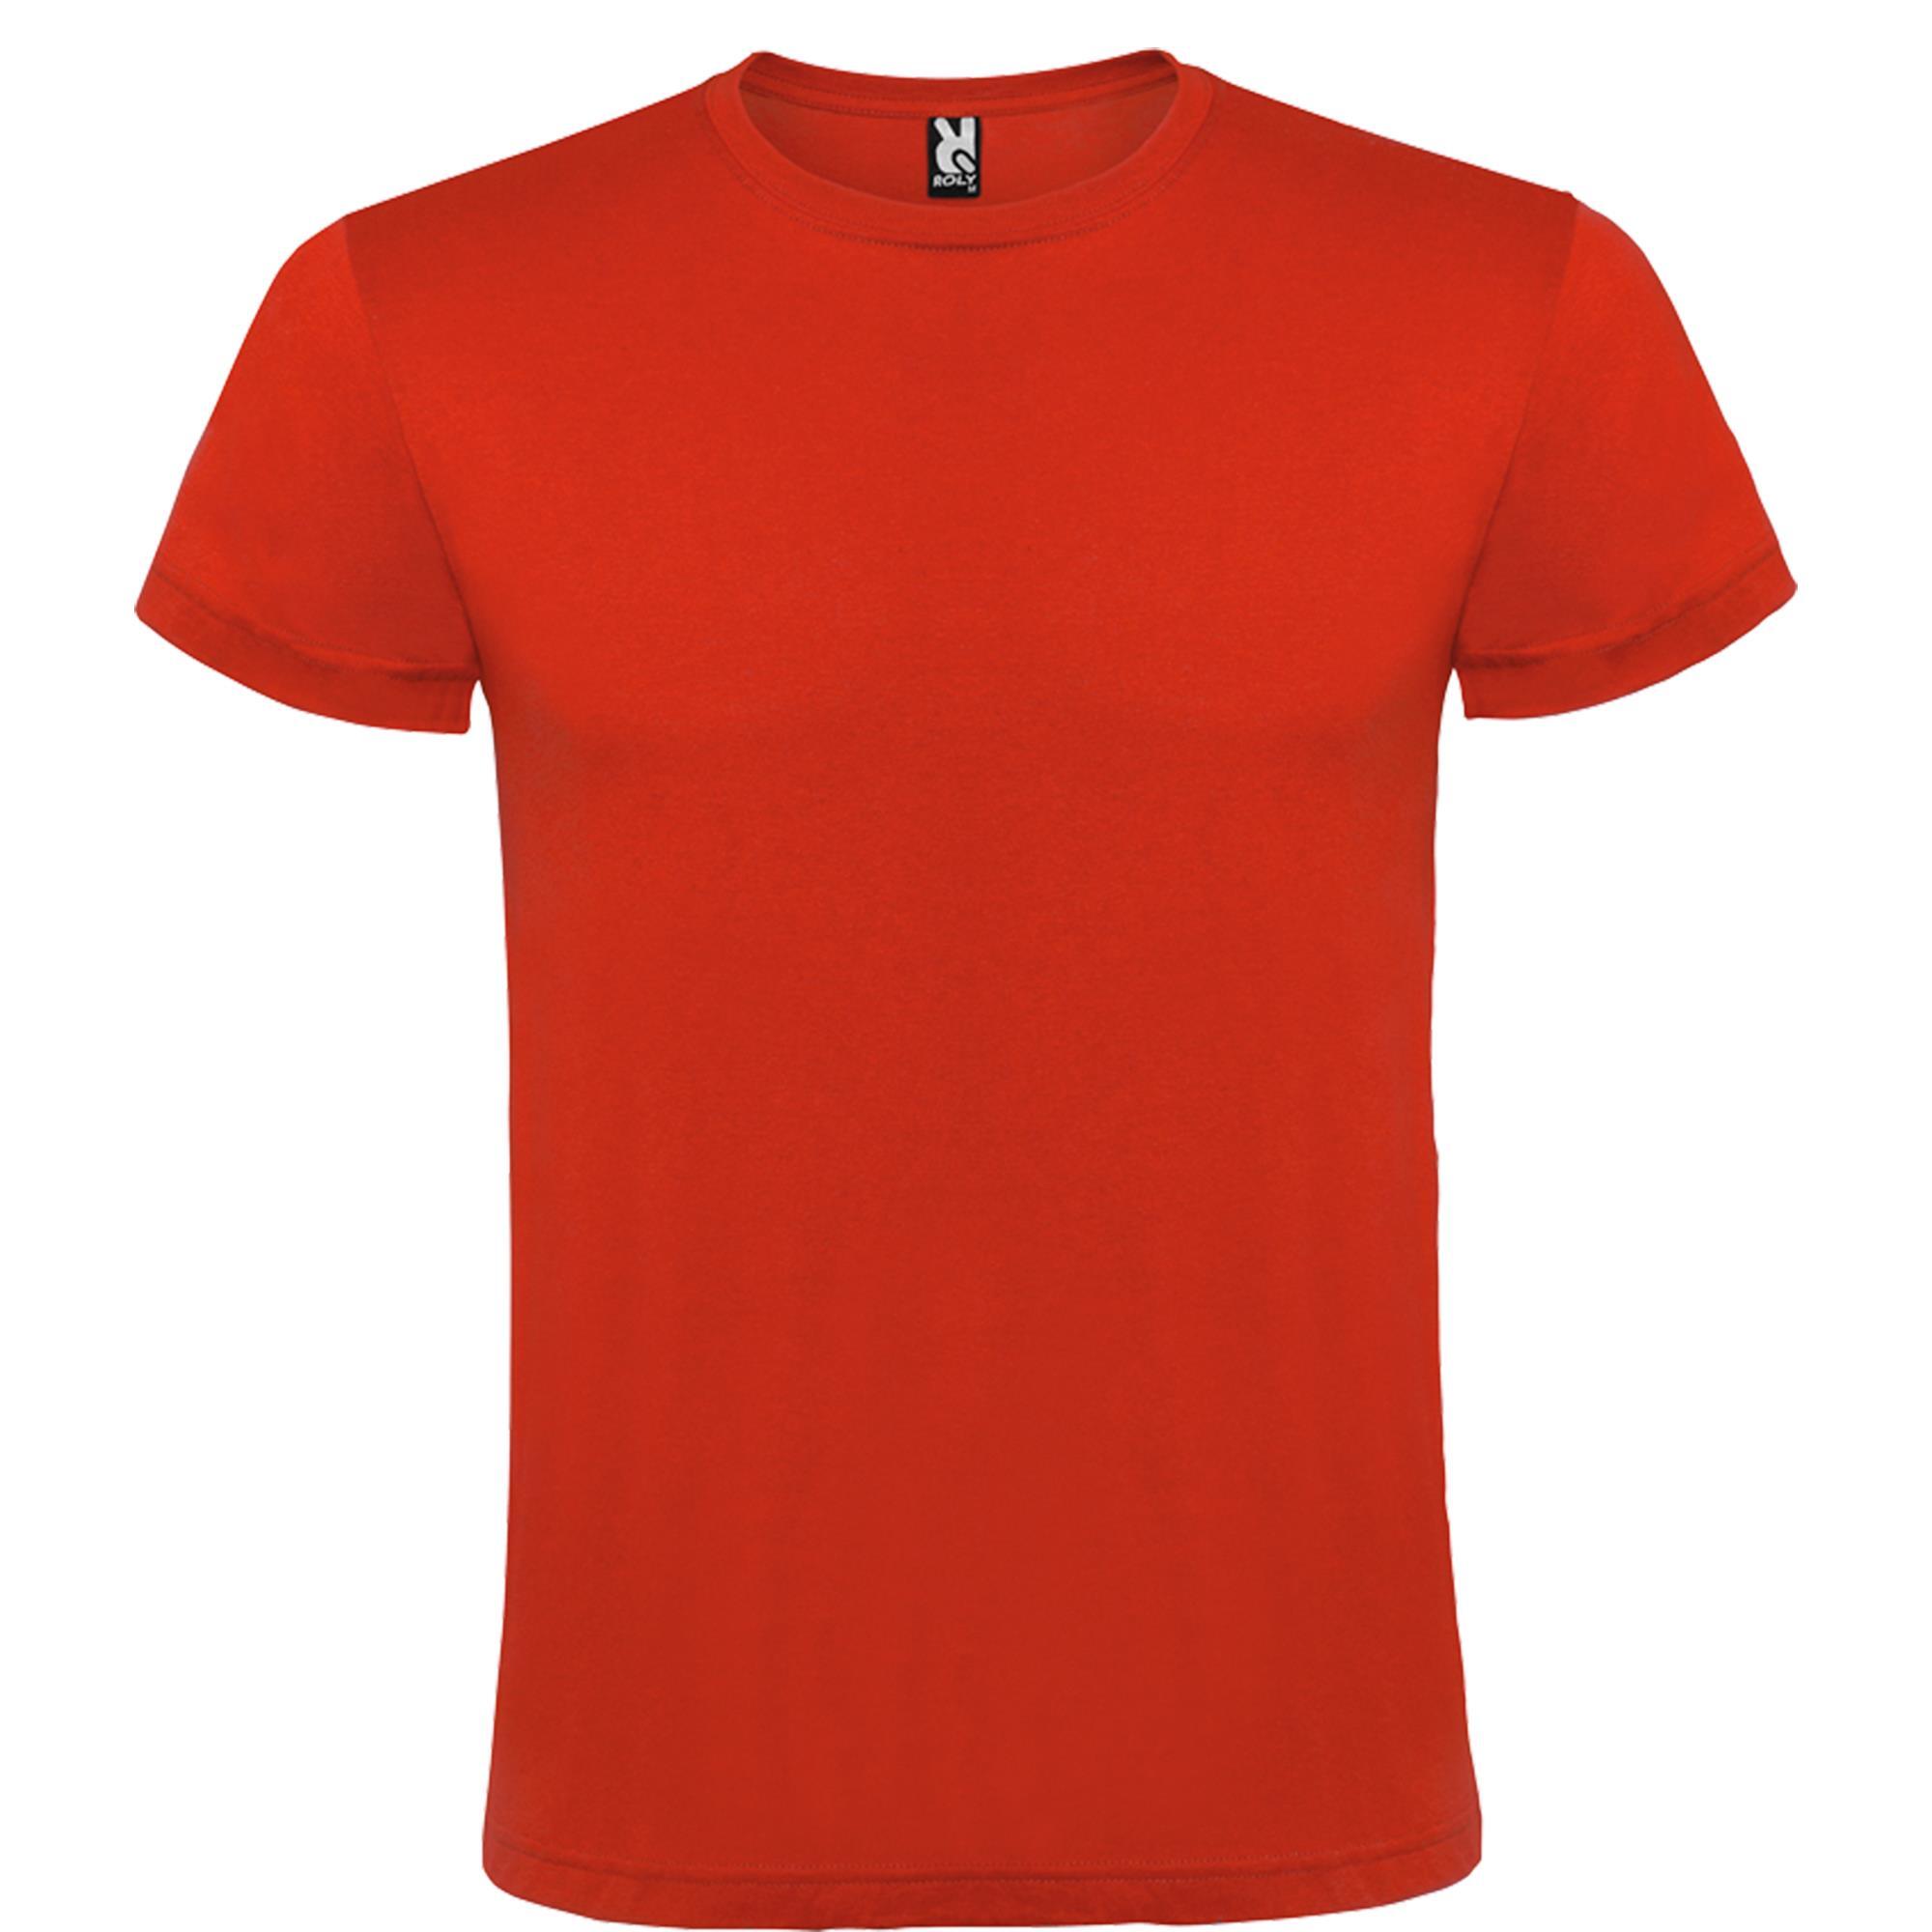 Rondgebreide T-shirt unisex voor volwassen rood personalisatie mogelijk